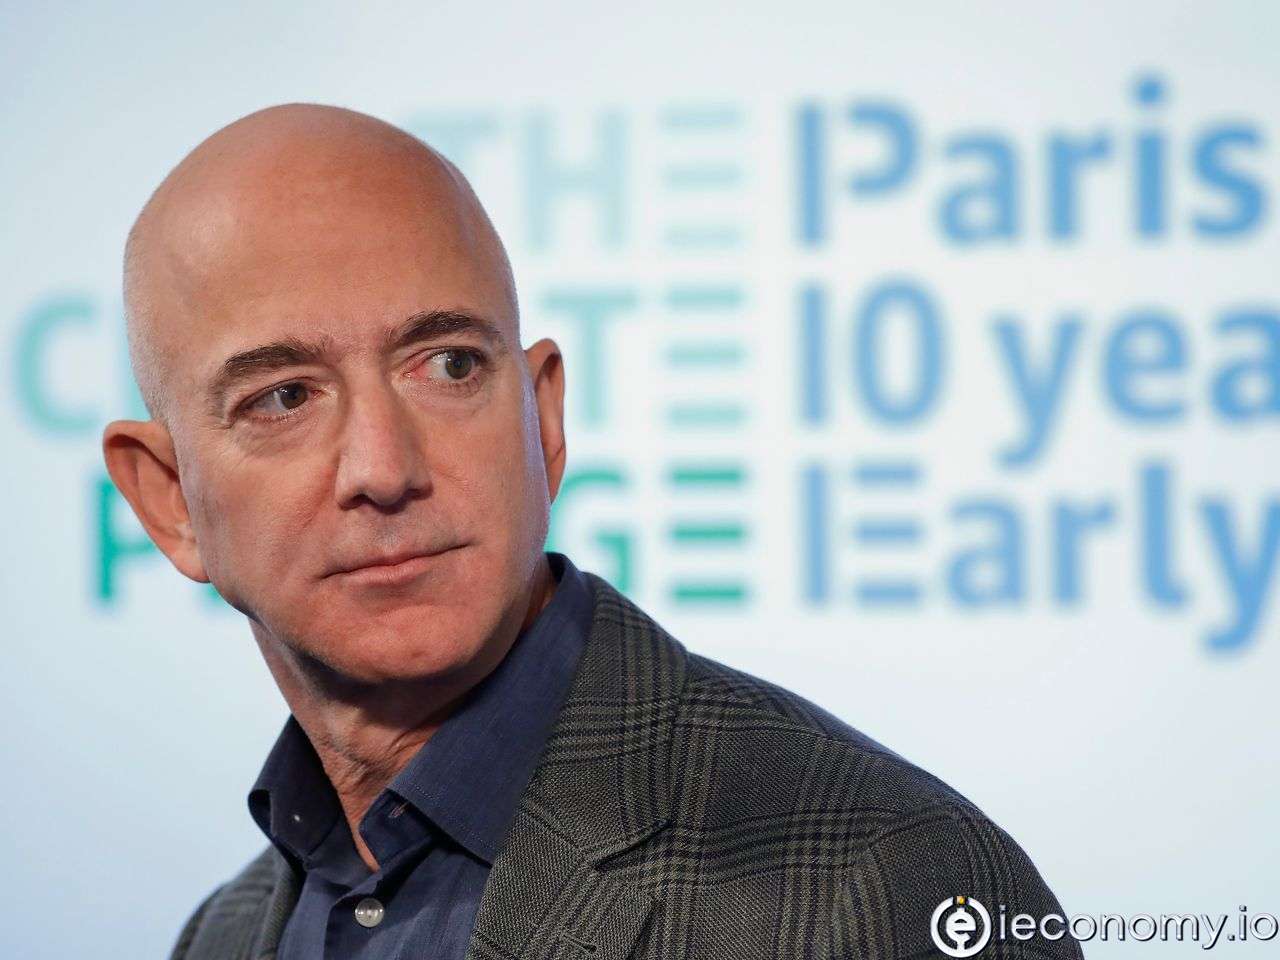 Jeff Bezos milyonlarca Amazon hisselerini satıyor